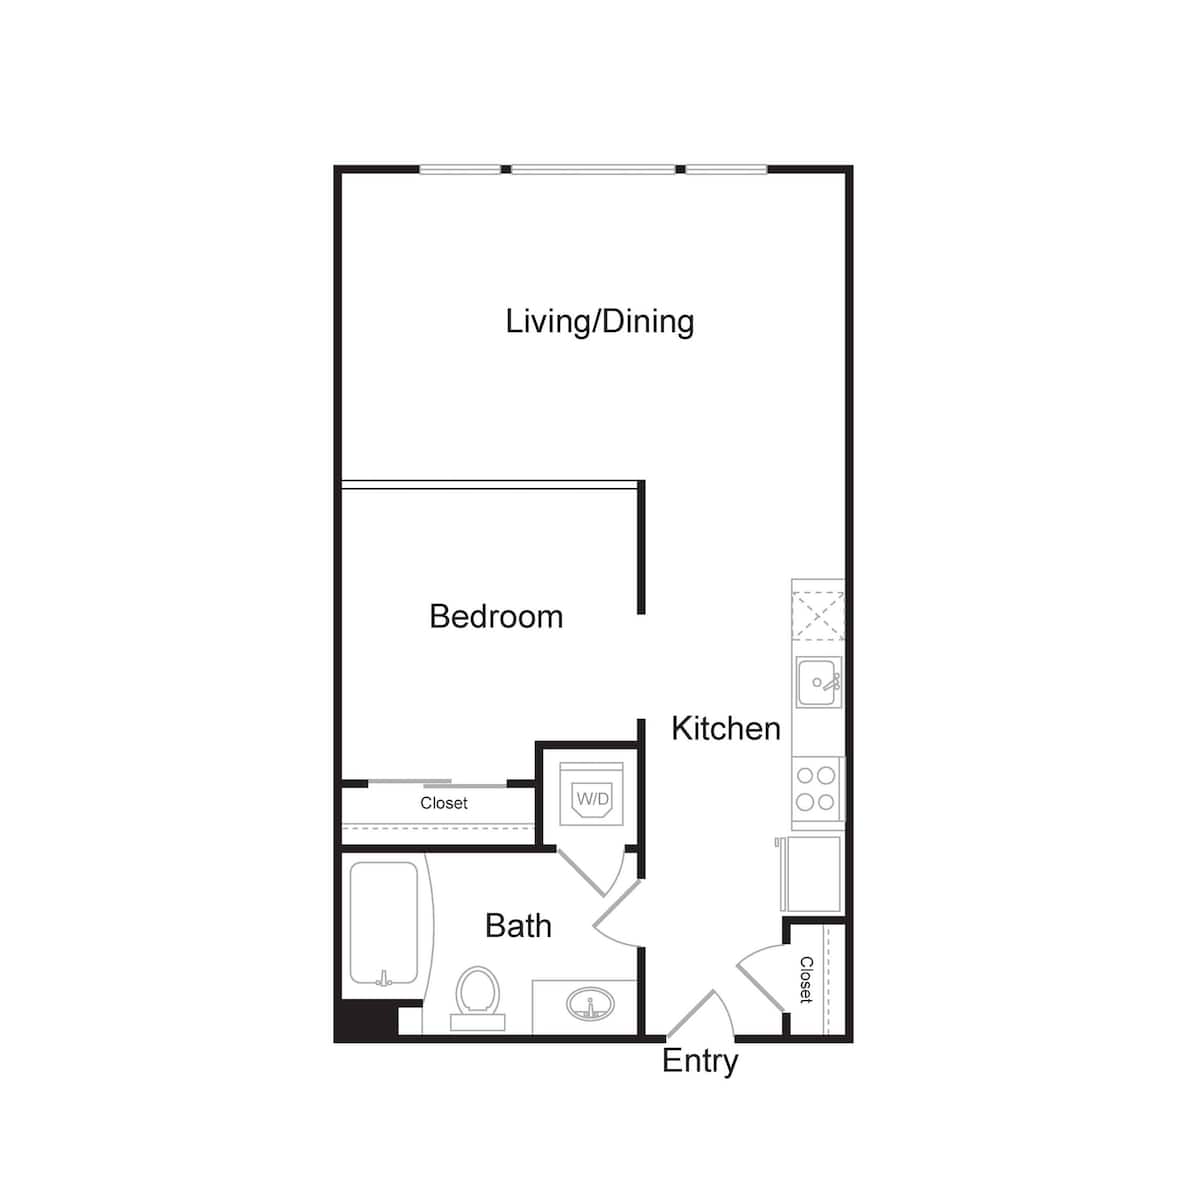 Floorplan diagram for S2, showing 1 bedroom